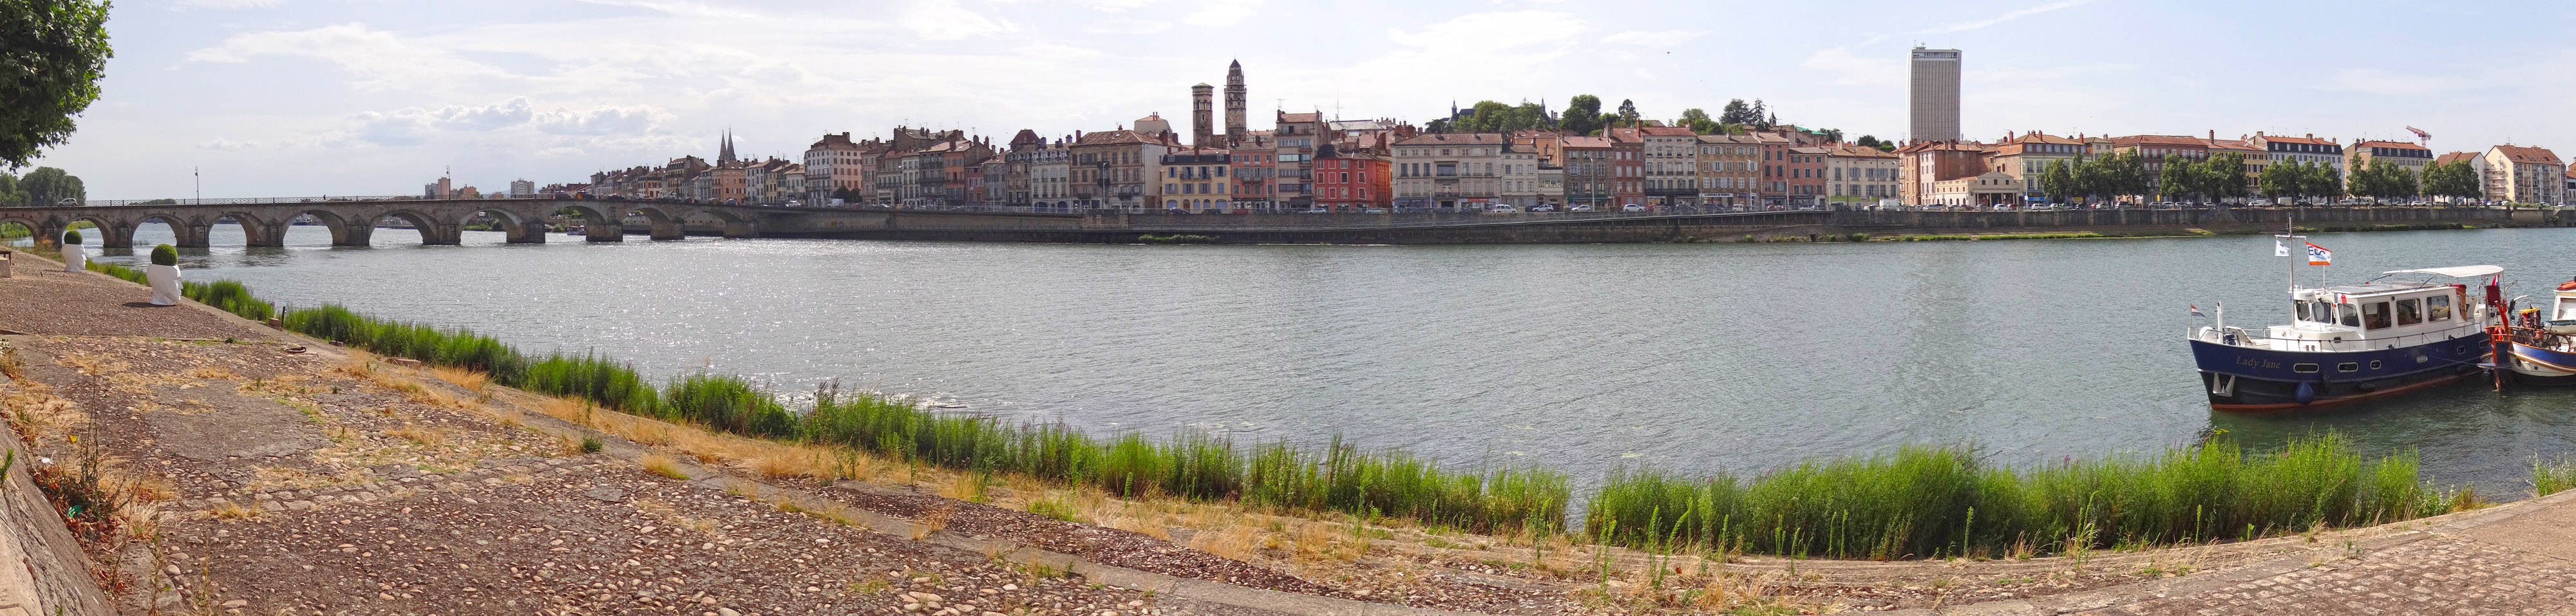 Les trois villes, Mâcon, Tournus et Chalon, ont profité de l'axe historique de la Saône pour se développer. Les bords de Saône à Mâcon, vus depuis St-Laurent-sur-Saône en grand format (nouvelle fenêtre)